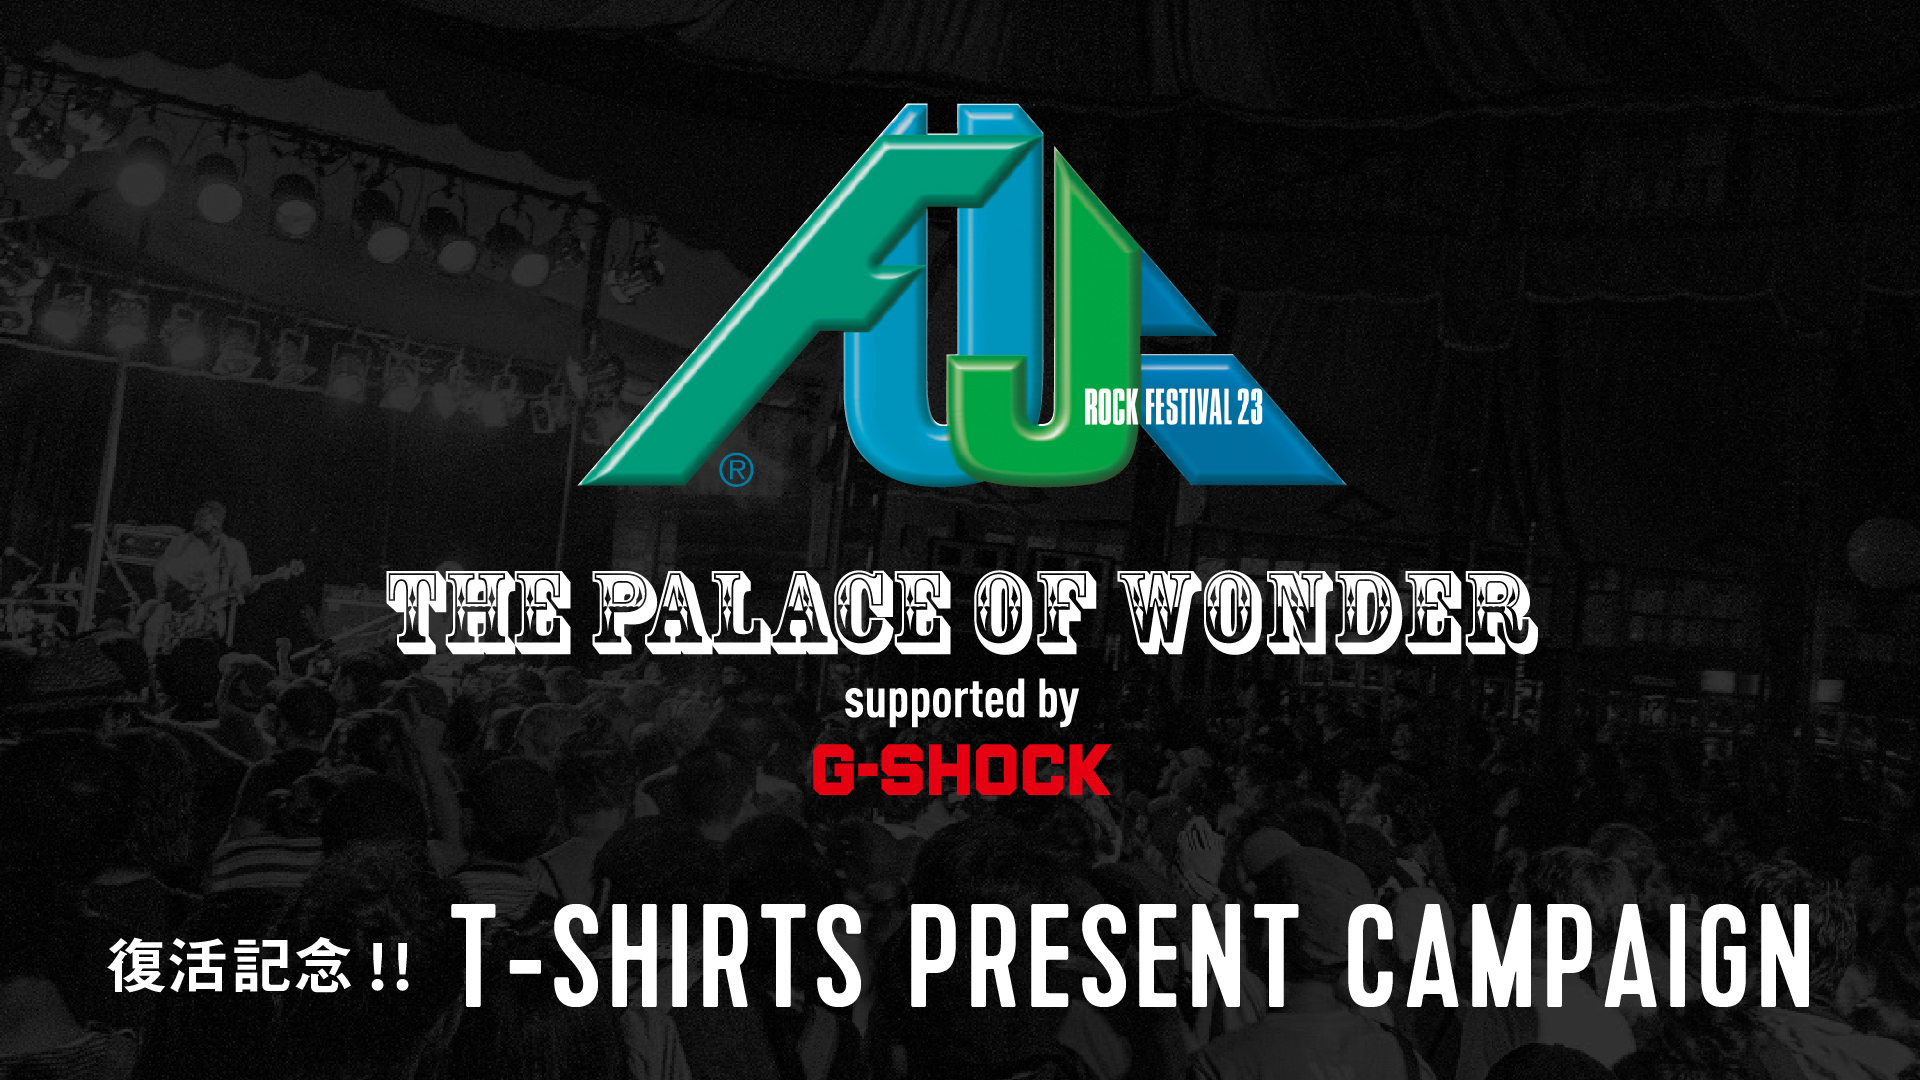 G-SHOCK 40th ANNIVERSARY　
“G-SHOCK”がFUJI ROCK FESTIVALの
オフィシャルパートナーとして参画し
「THE PALACE OF WONDER」が復活！
Tシャツプレゼントキャンペーンを開催。